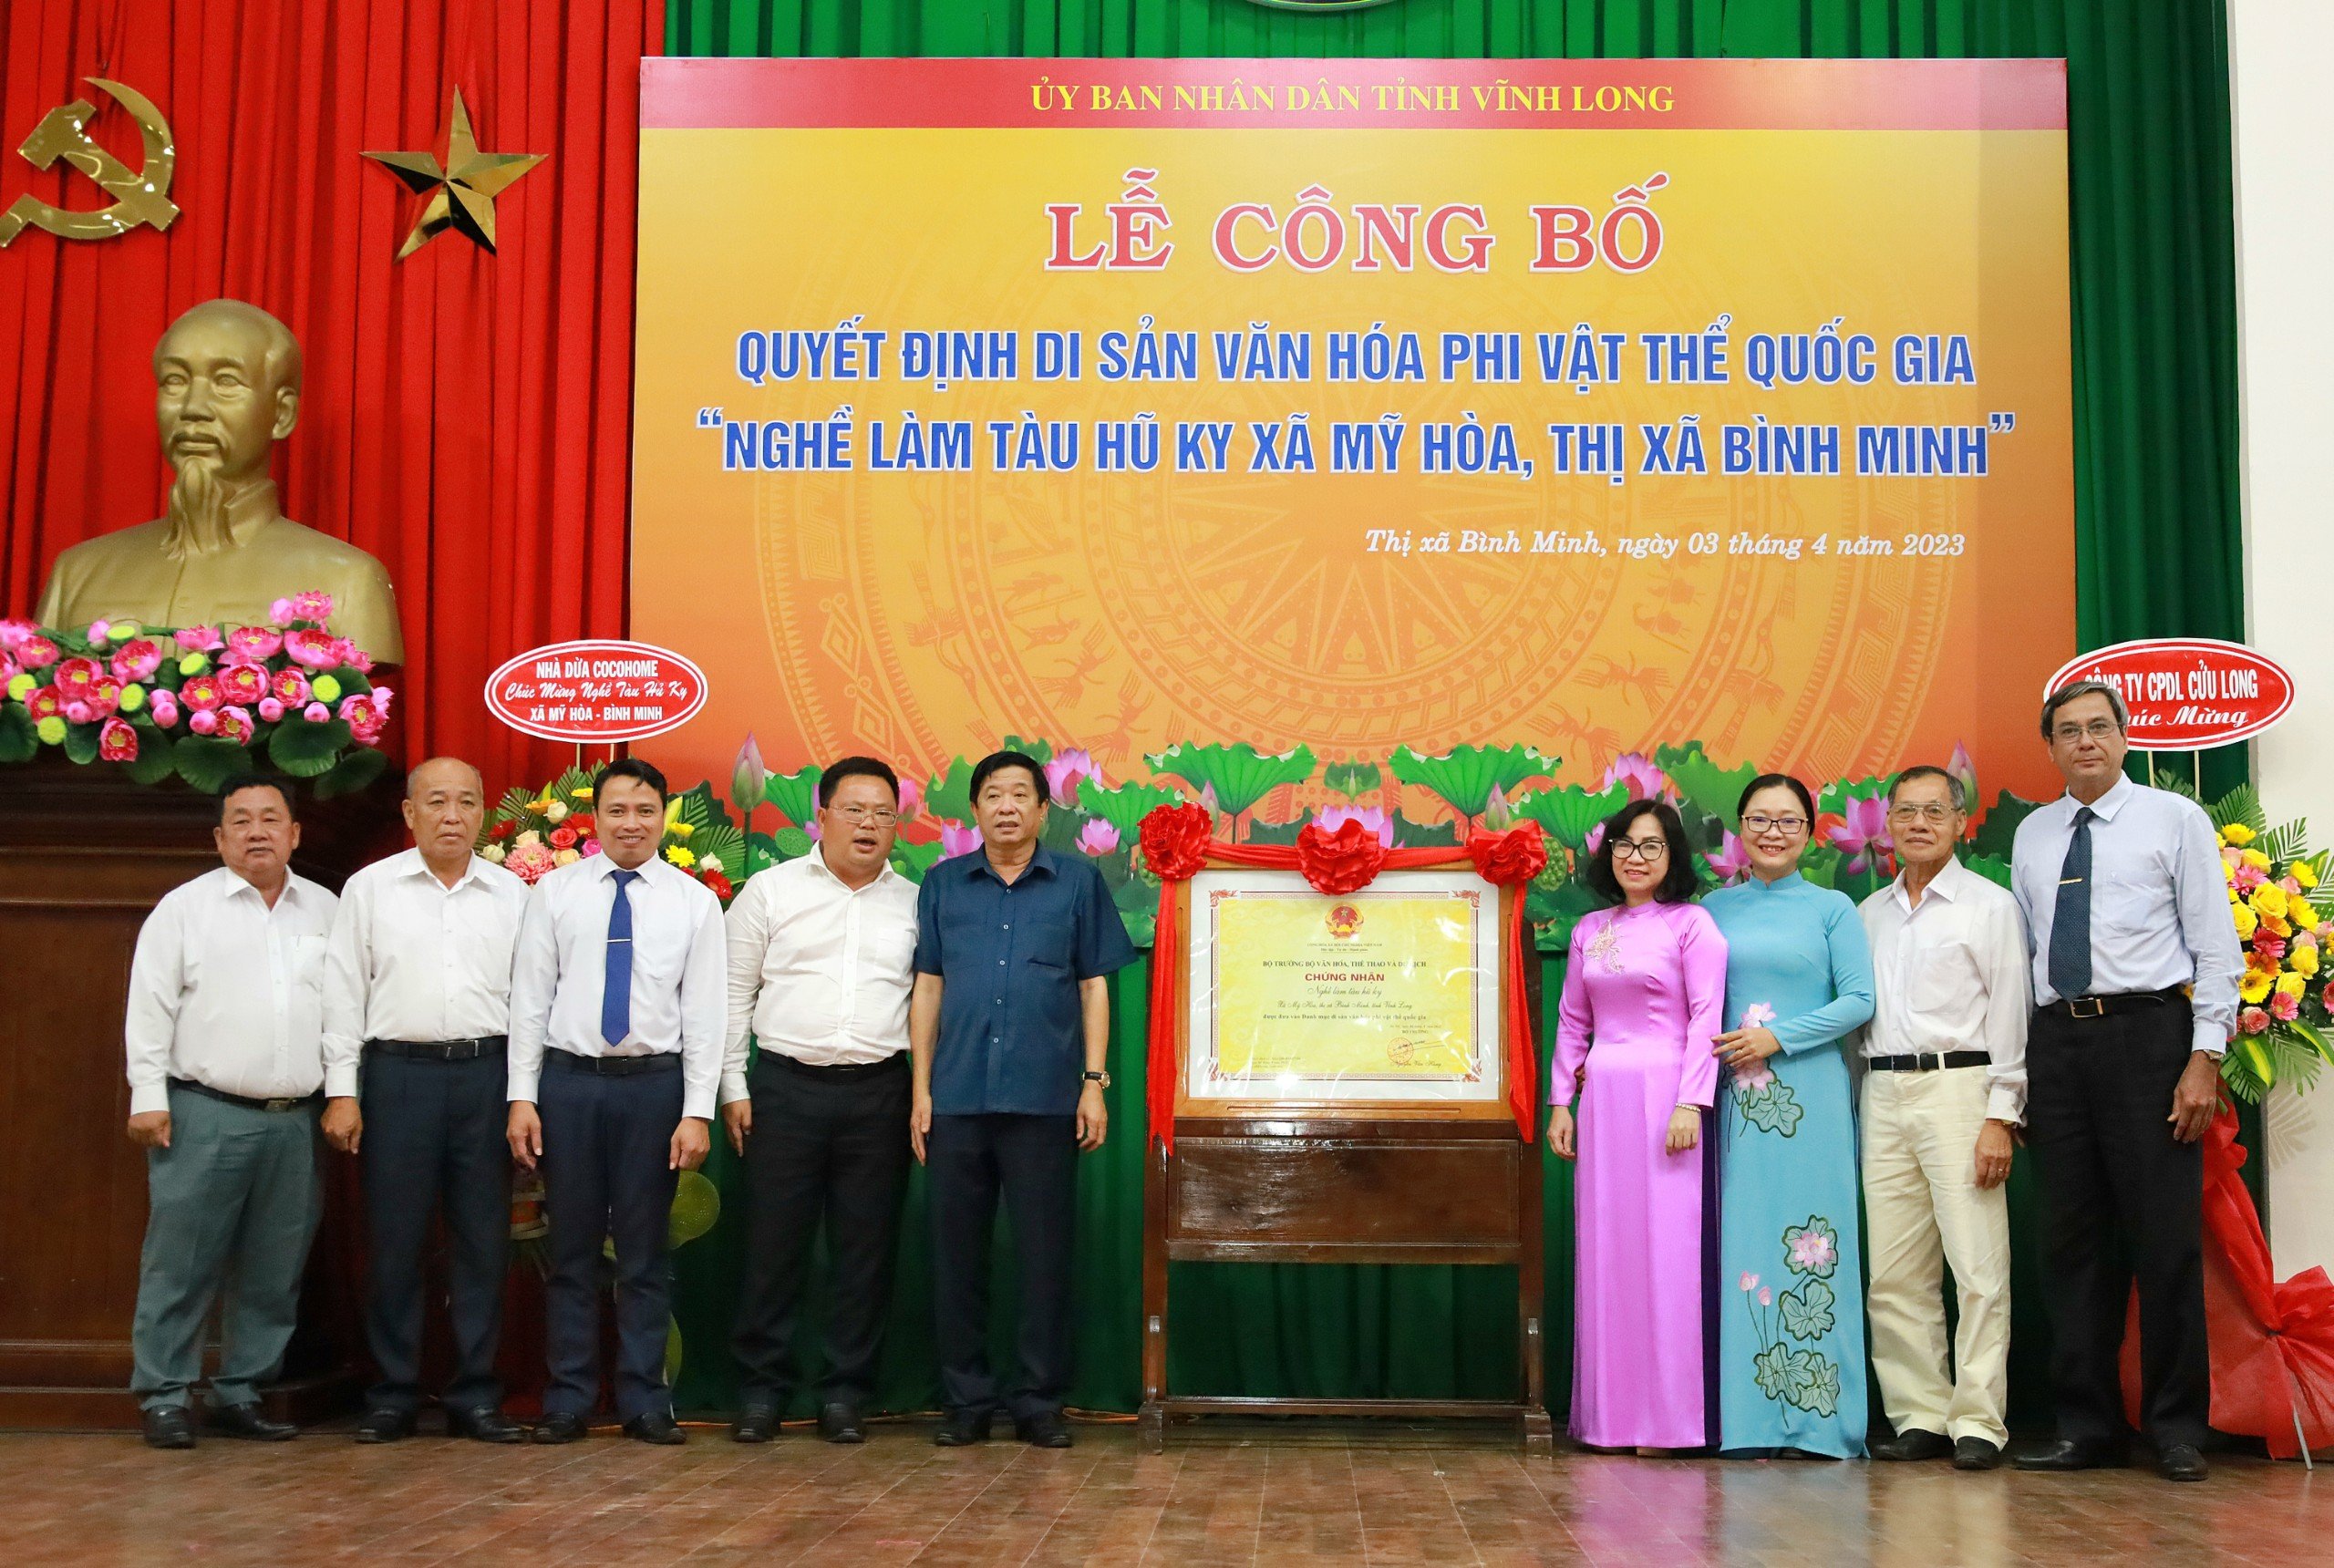 Các đại biểu chụp hình lưu niệm tại lễ công bố quyết định Di sản văn hóa phi vật thể quốc gia “Nghề làm Tàu hũ ky xã Mỹ Hòa, thị xã Bình Minh”.